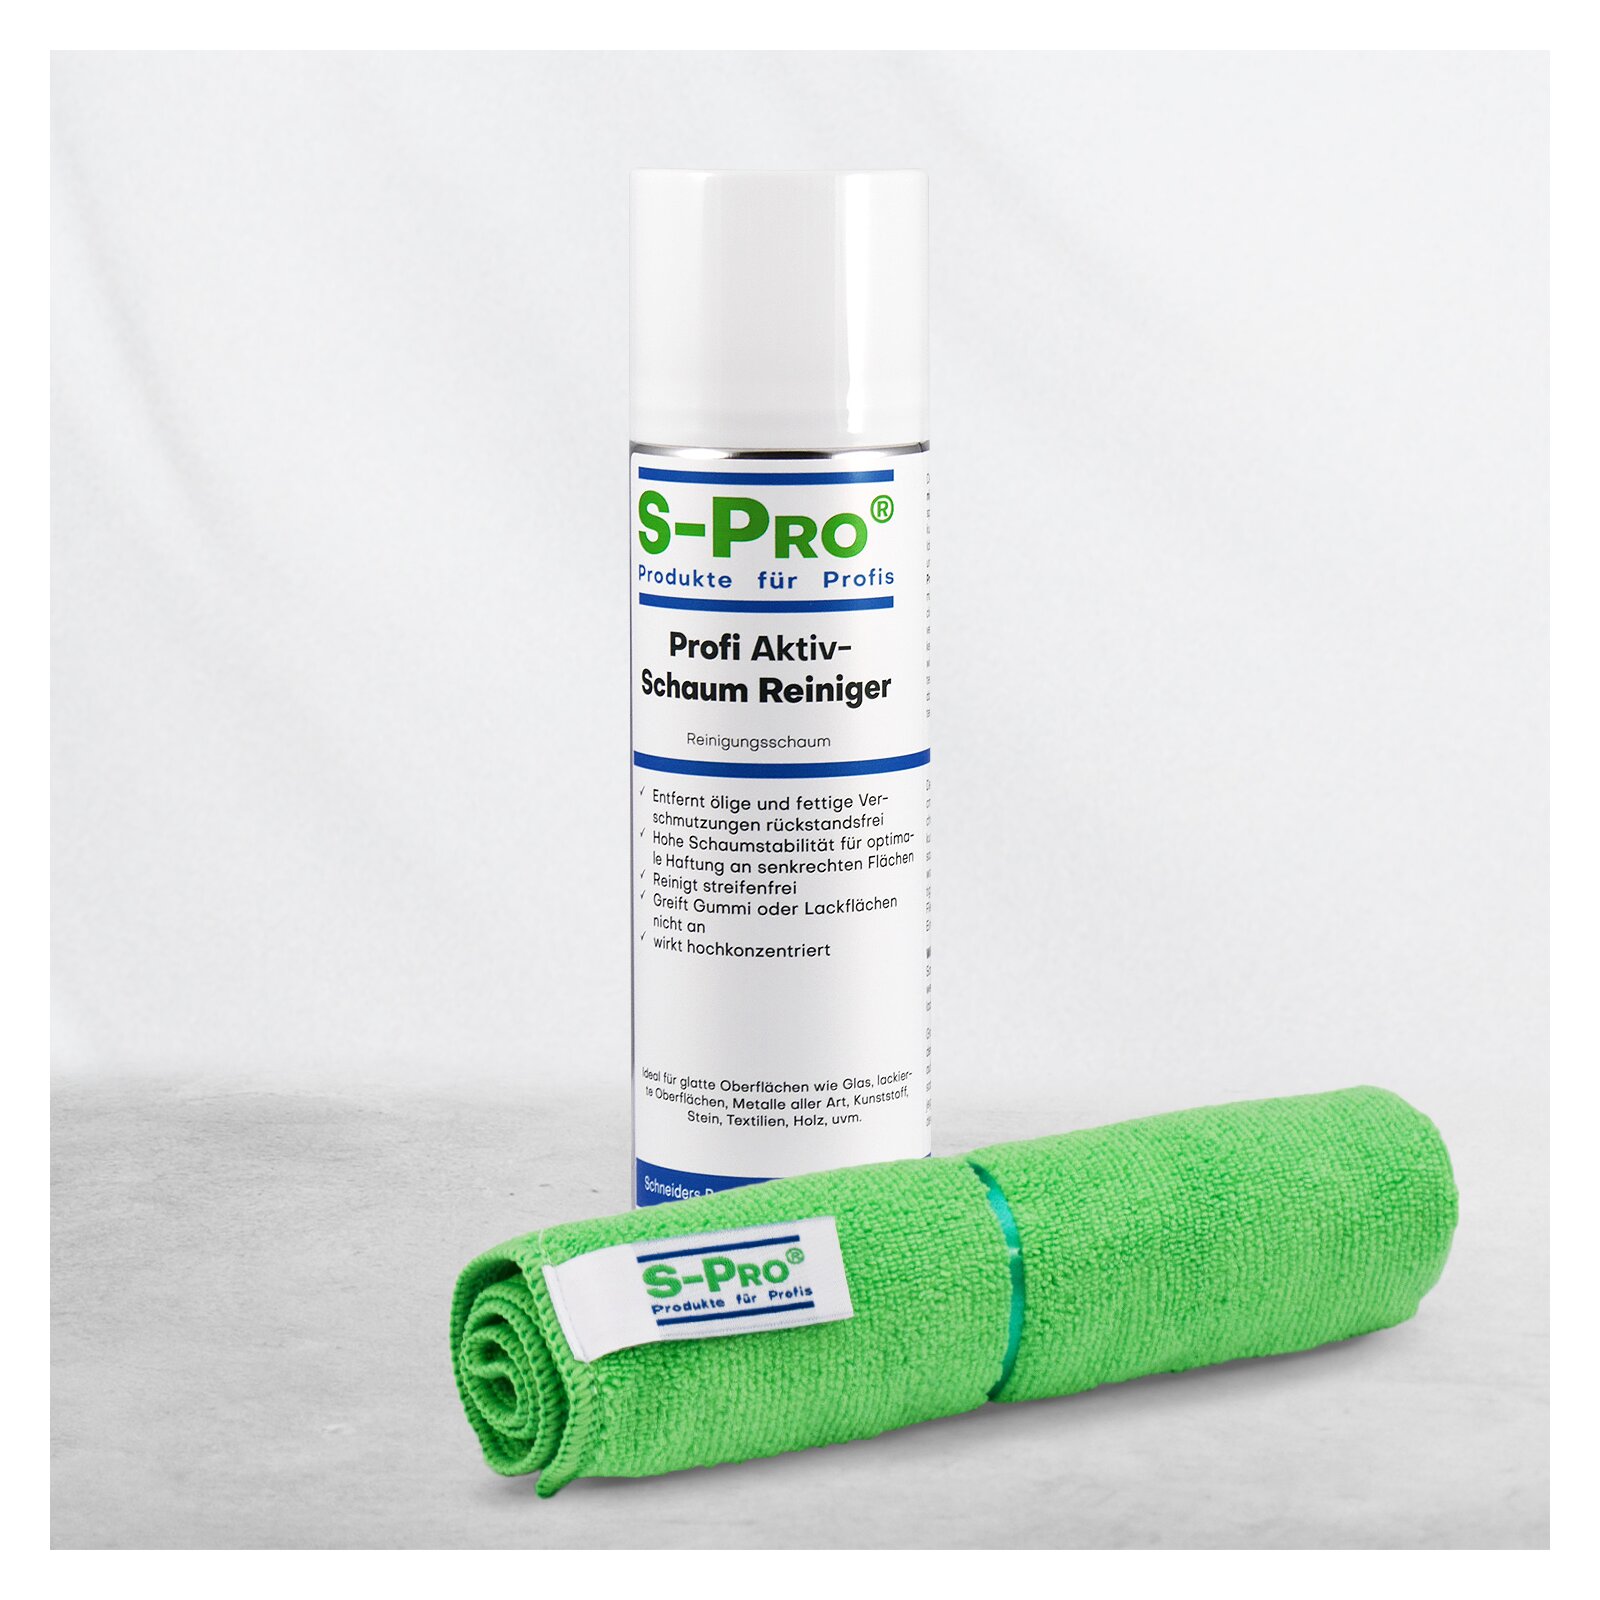 S-Pro® Profi AktivSchaum-Reiniger incl. hochwertigem Microfasertuch